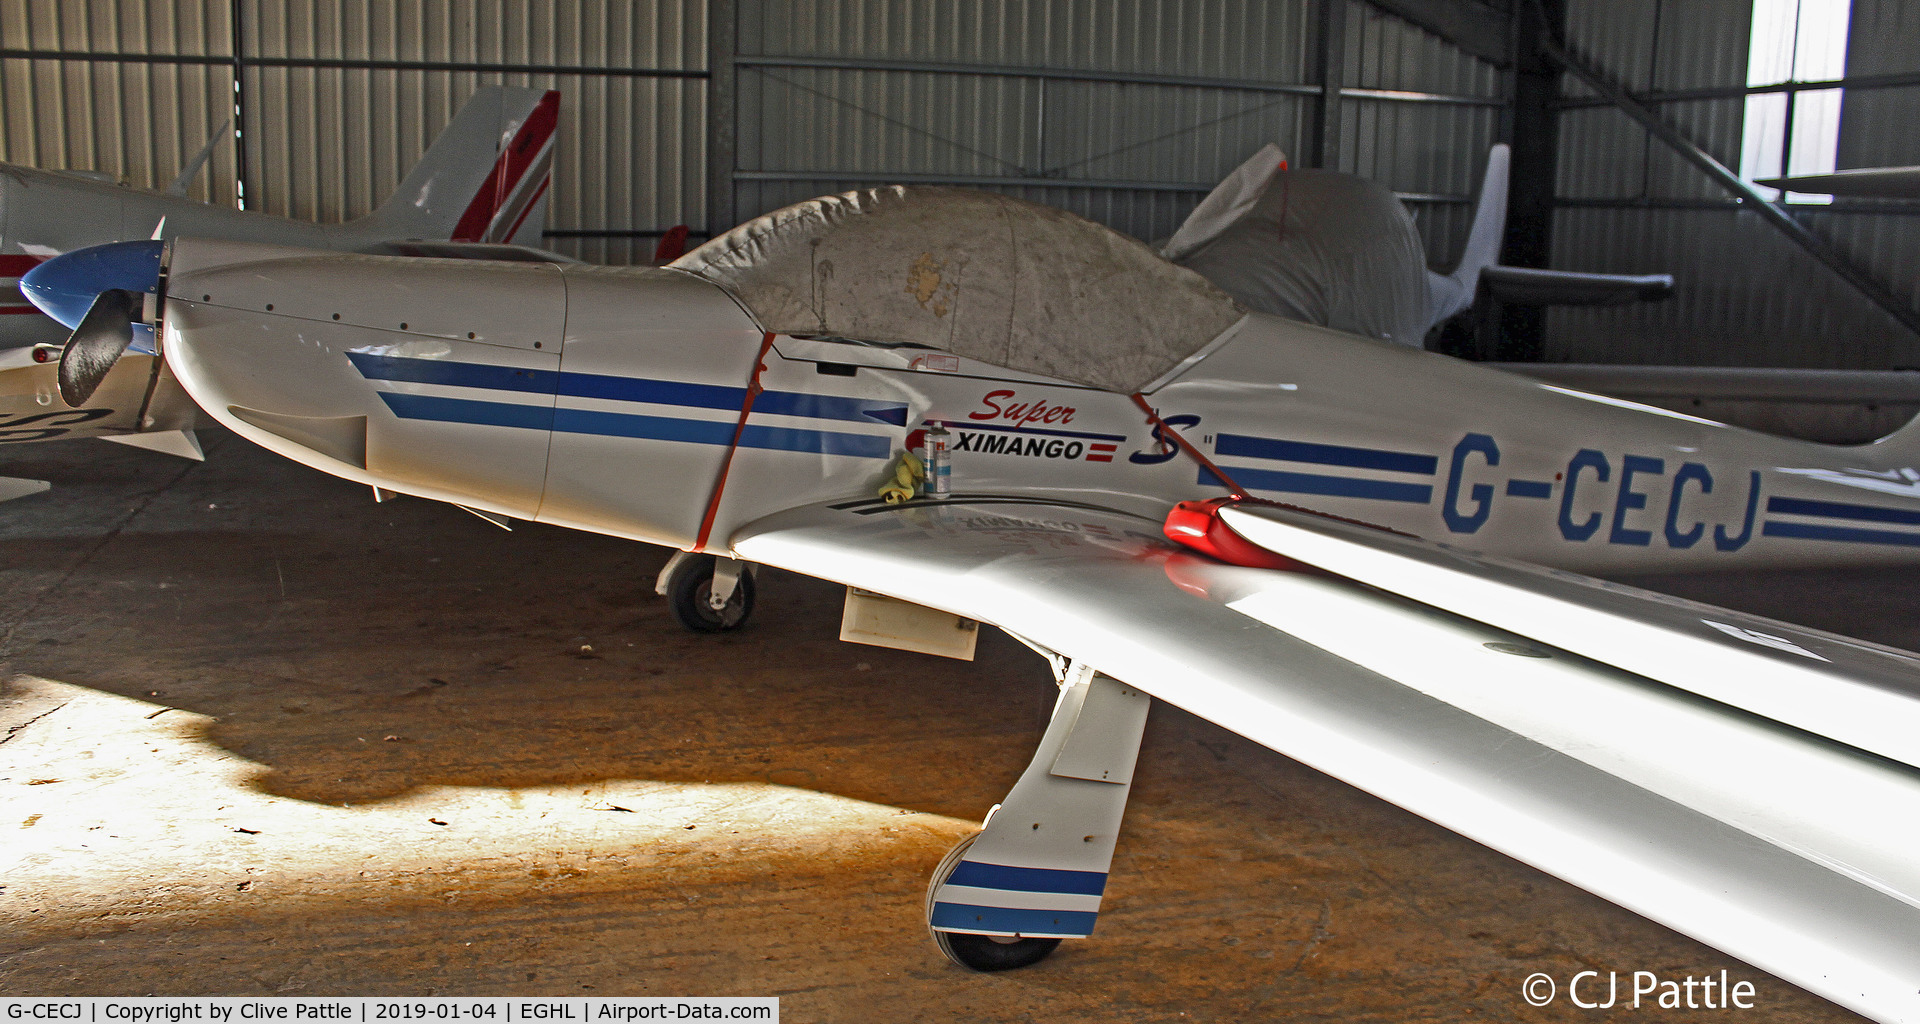 G-CECJ, 2006 Aeromot AMT-200S Super Ximango C/N 200.168, Hangared @Lasham